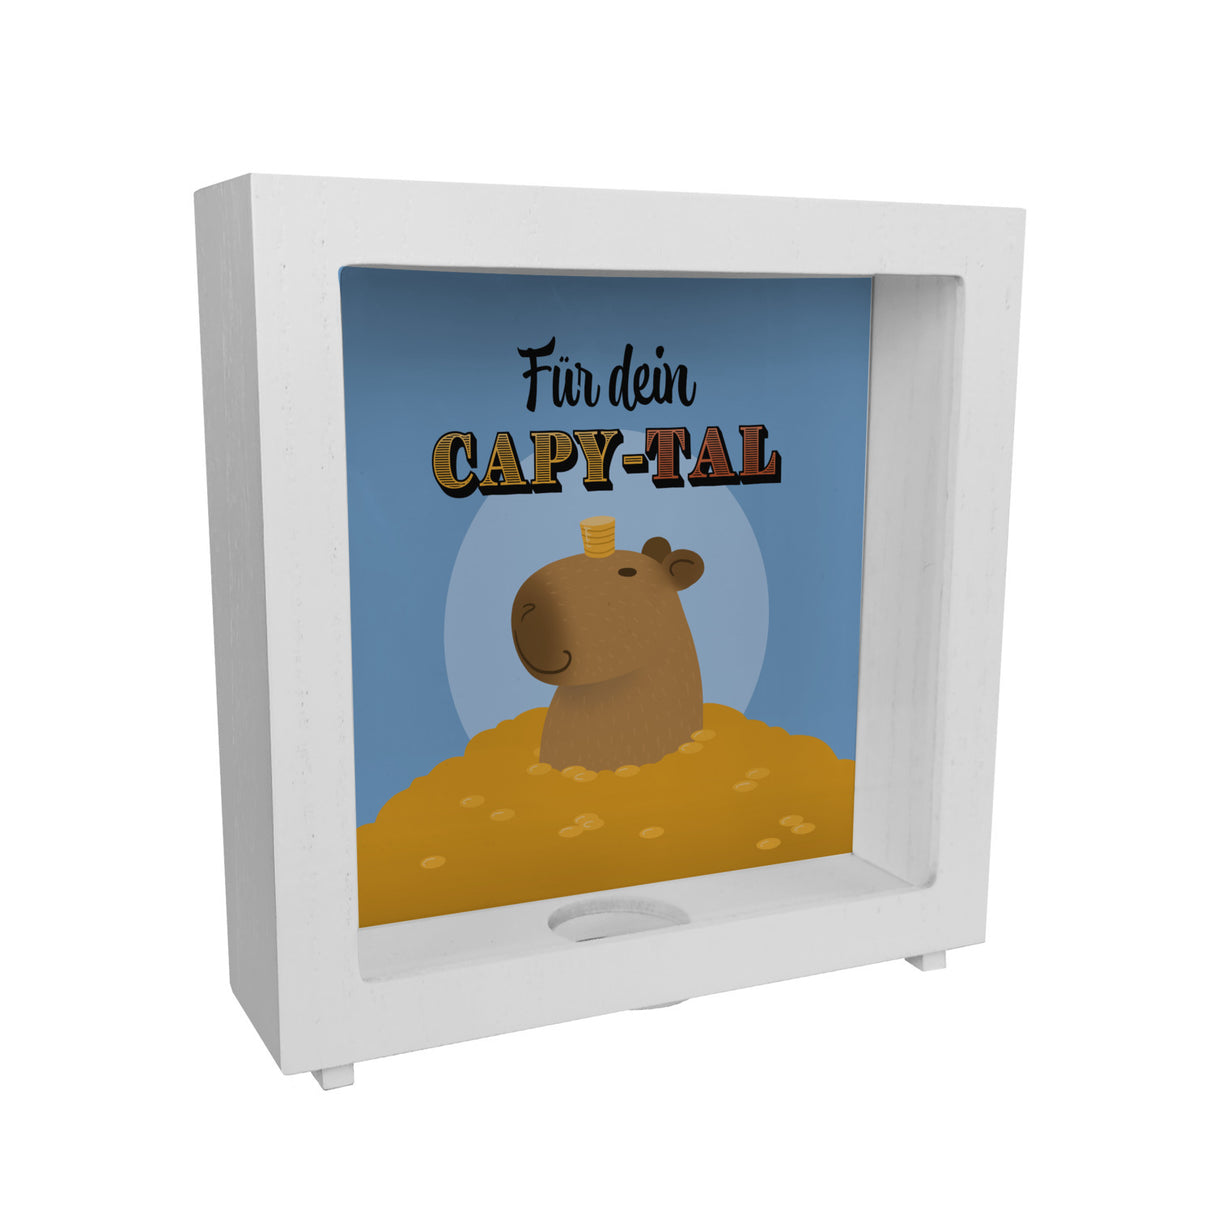 Für dein Capy-tal Spardose mit süßem Capybara